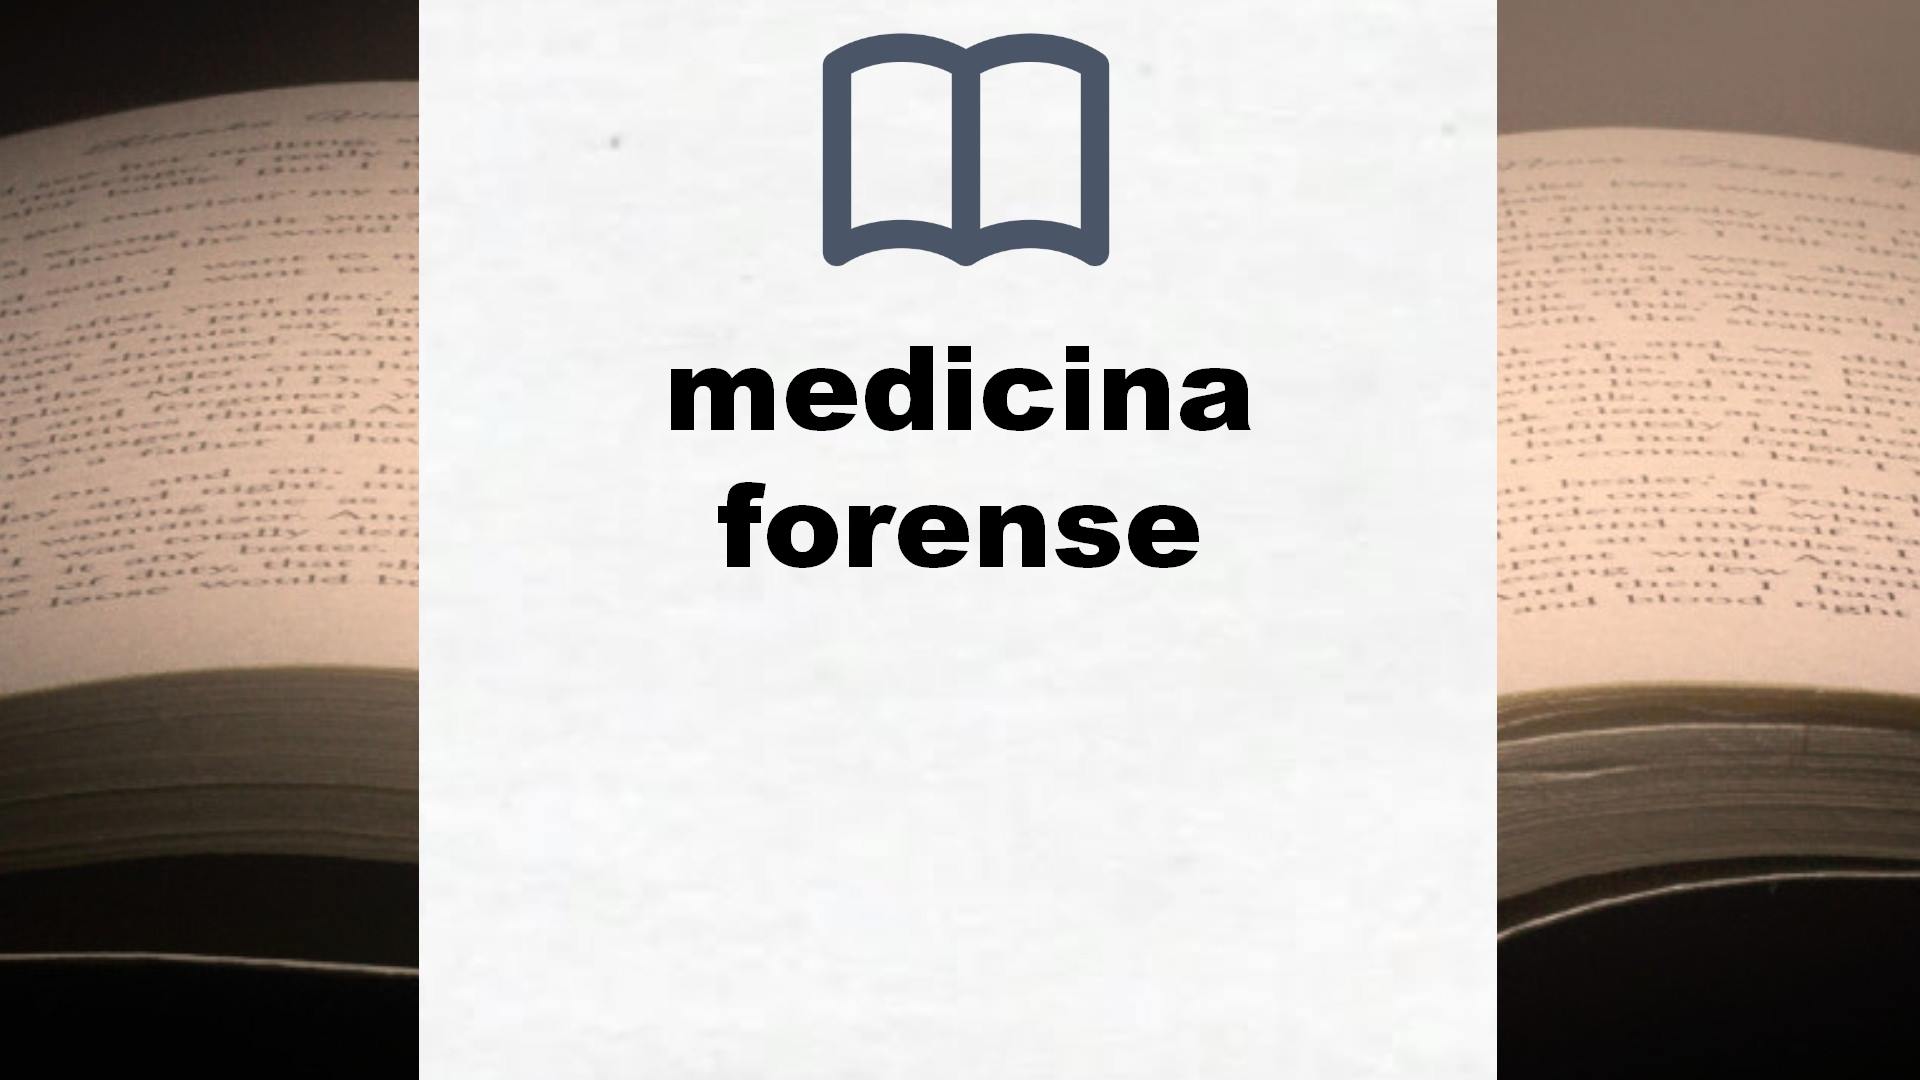 Libros sobre medicina forense